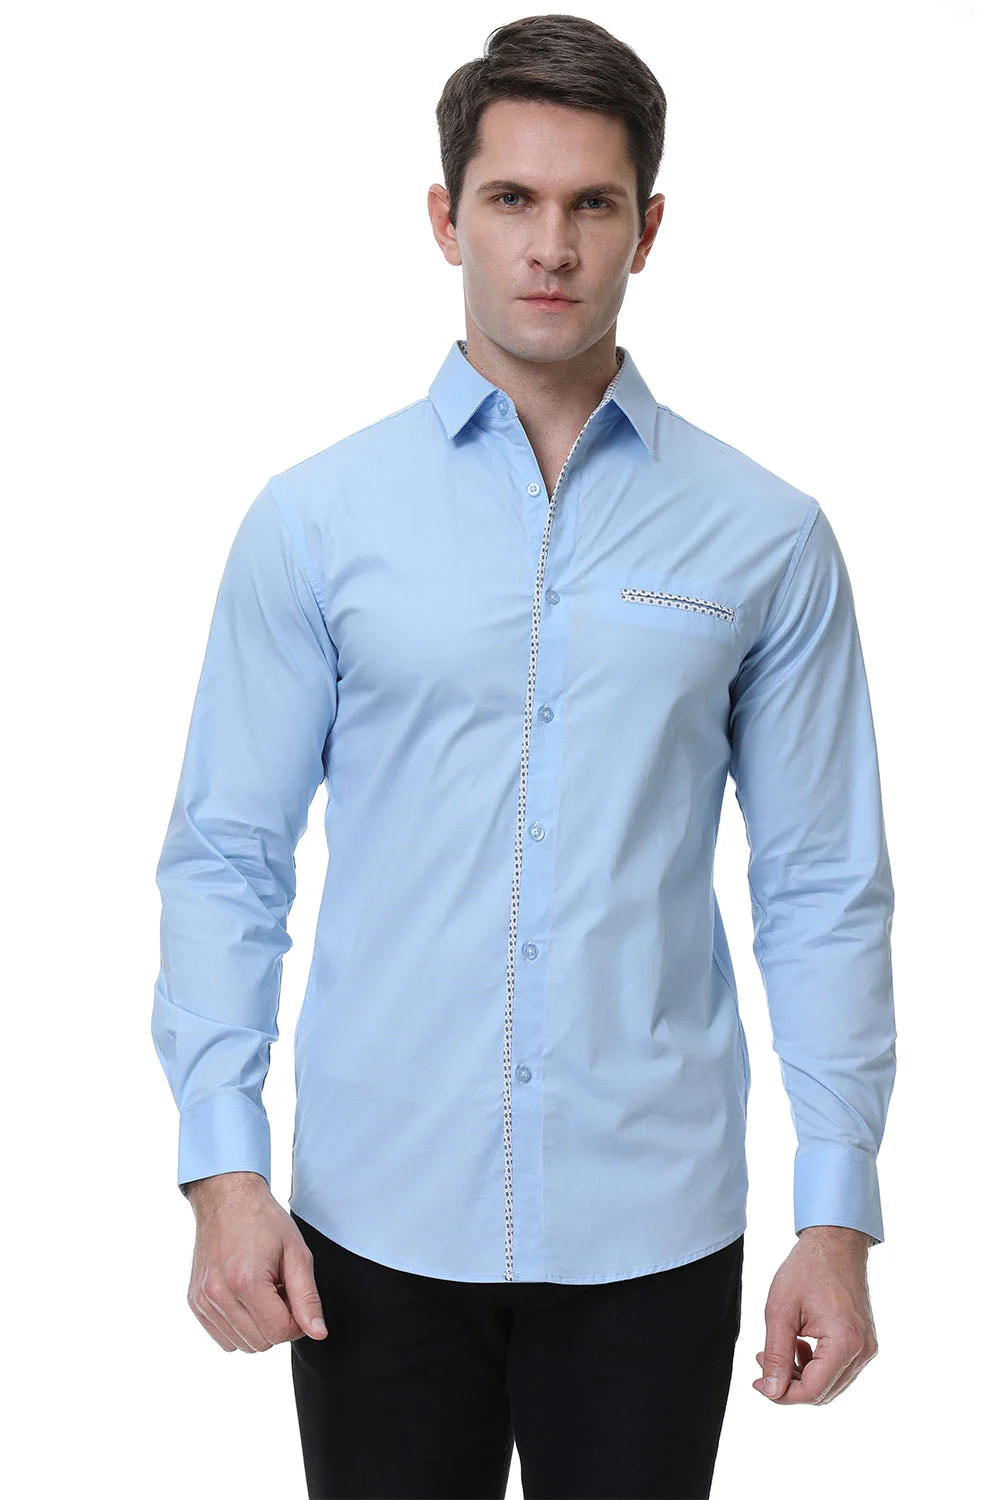 Men's Pocket Long Cotton Stretch Shirt blue front